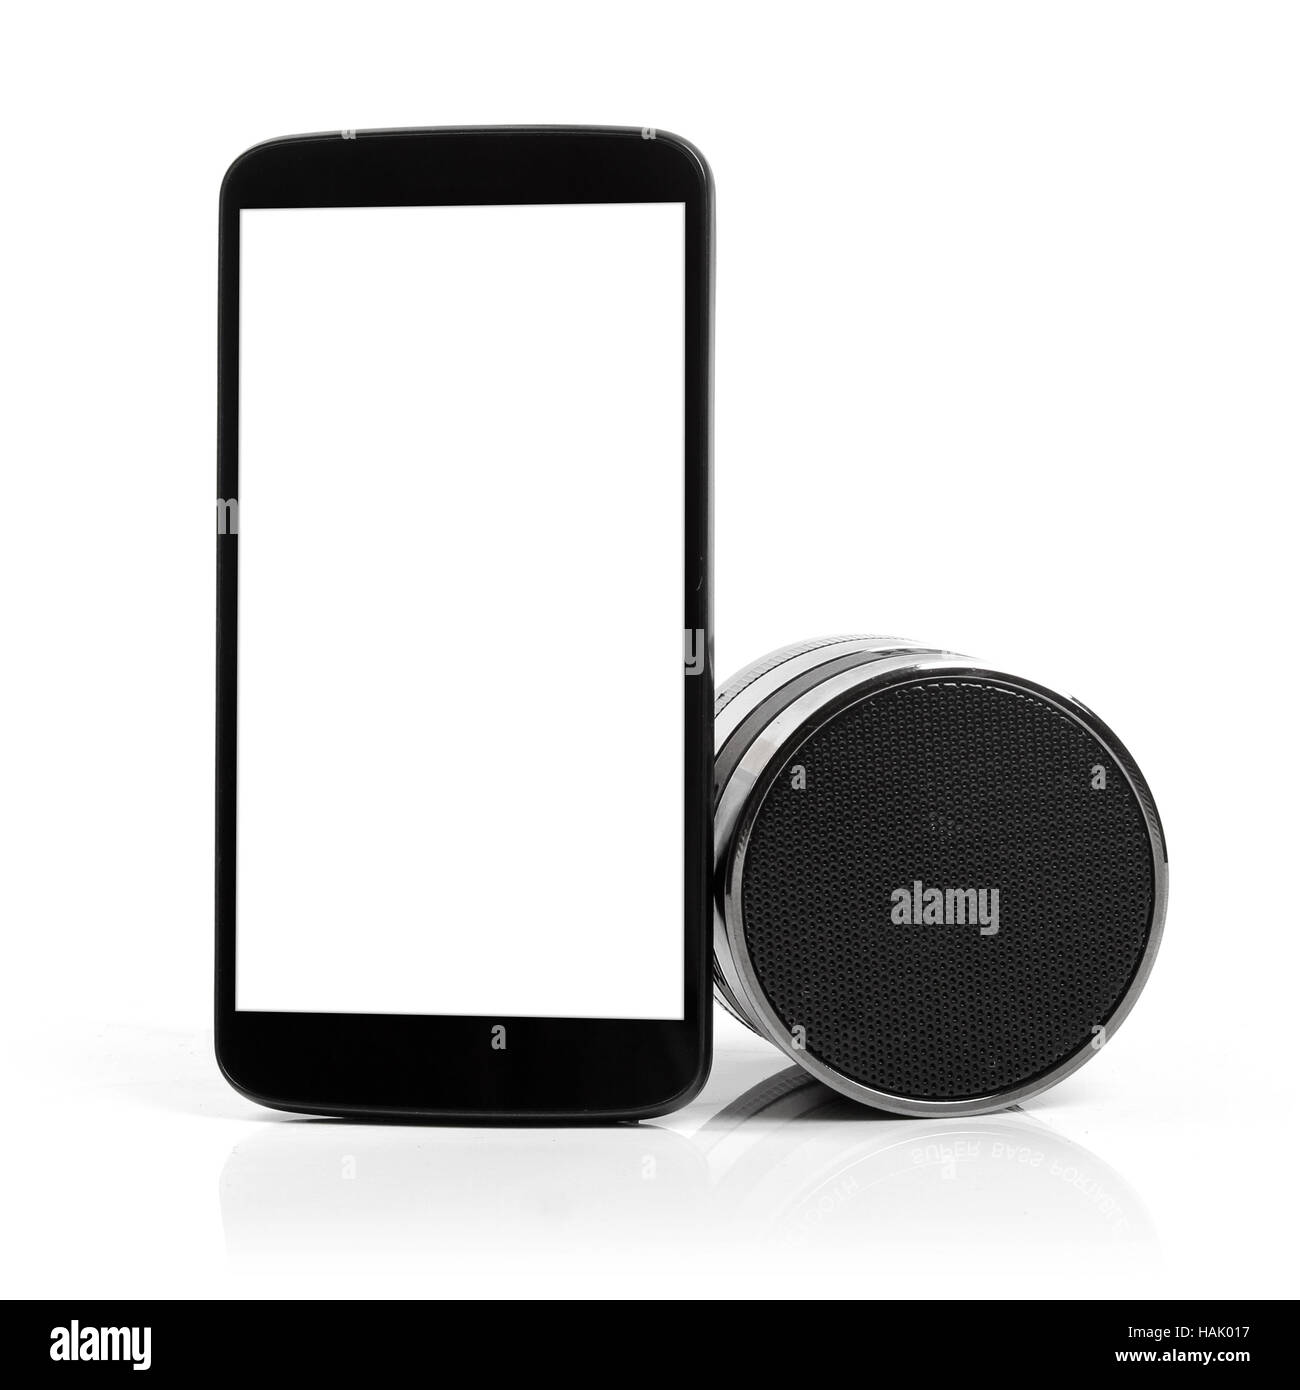 Blank téléphone mobile avec haut-parleur Bluetooth Banque D'Images